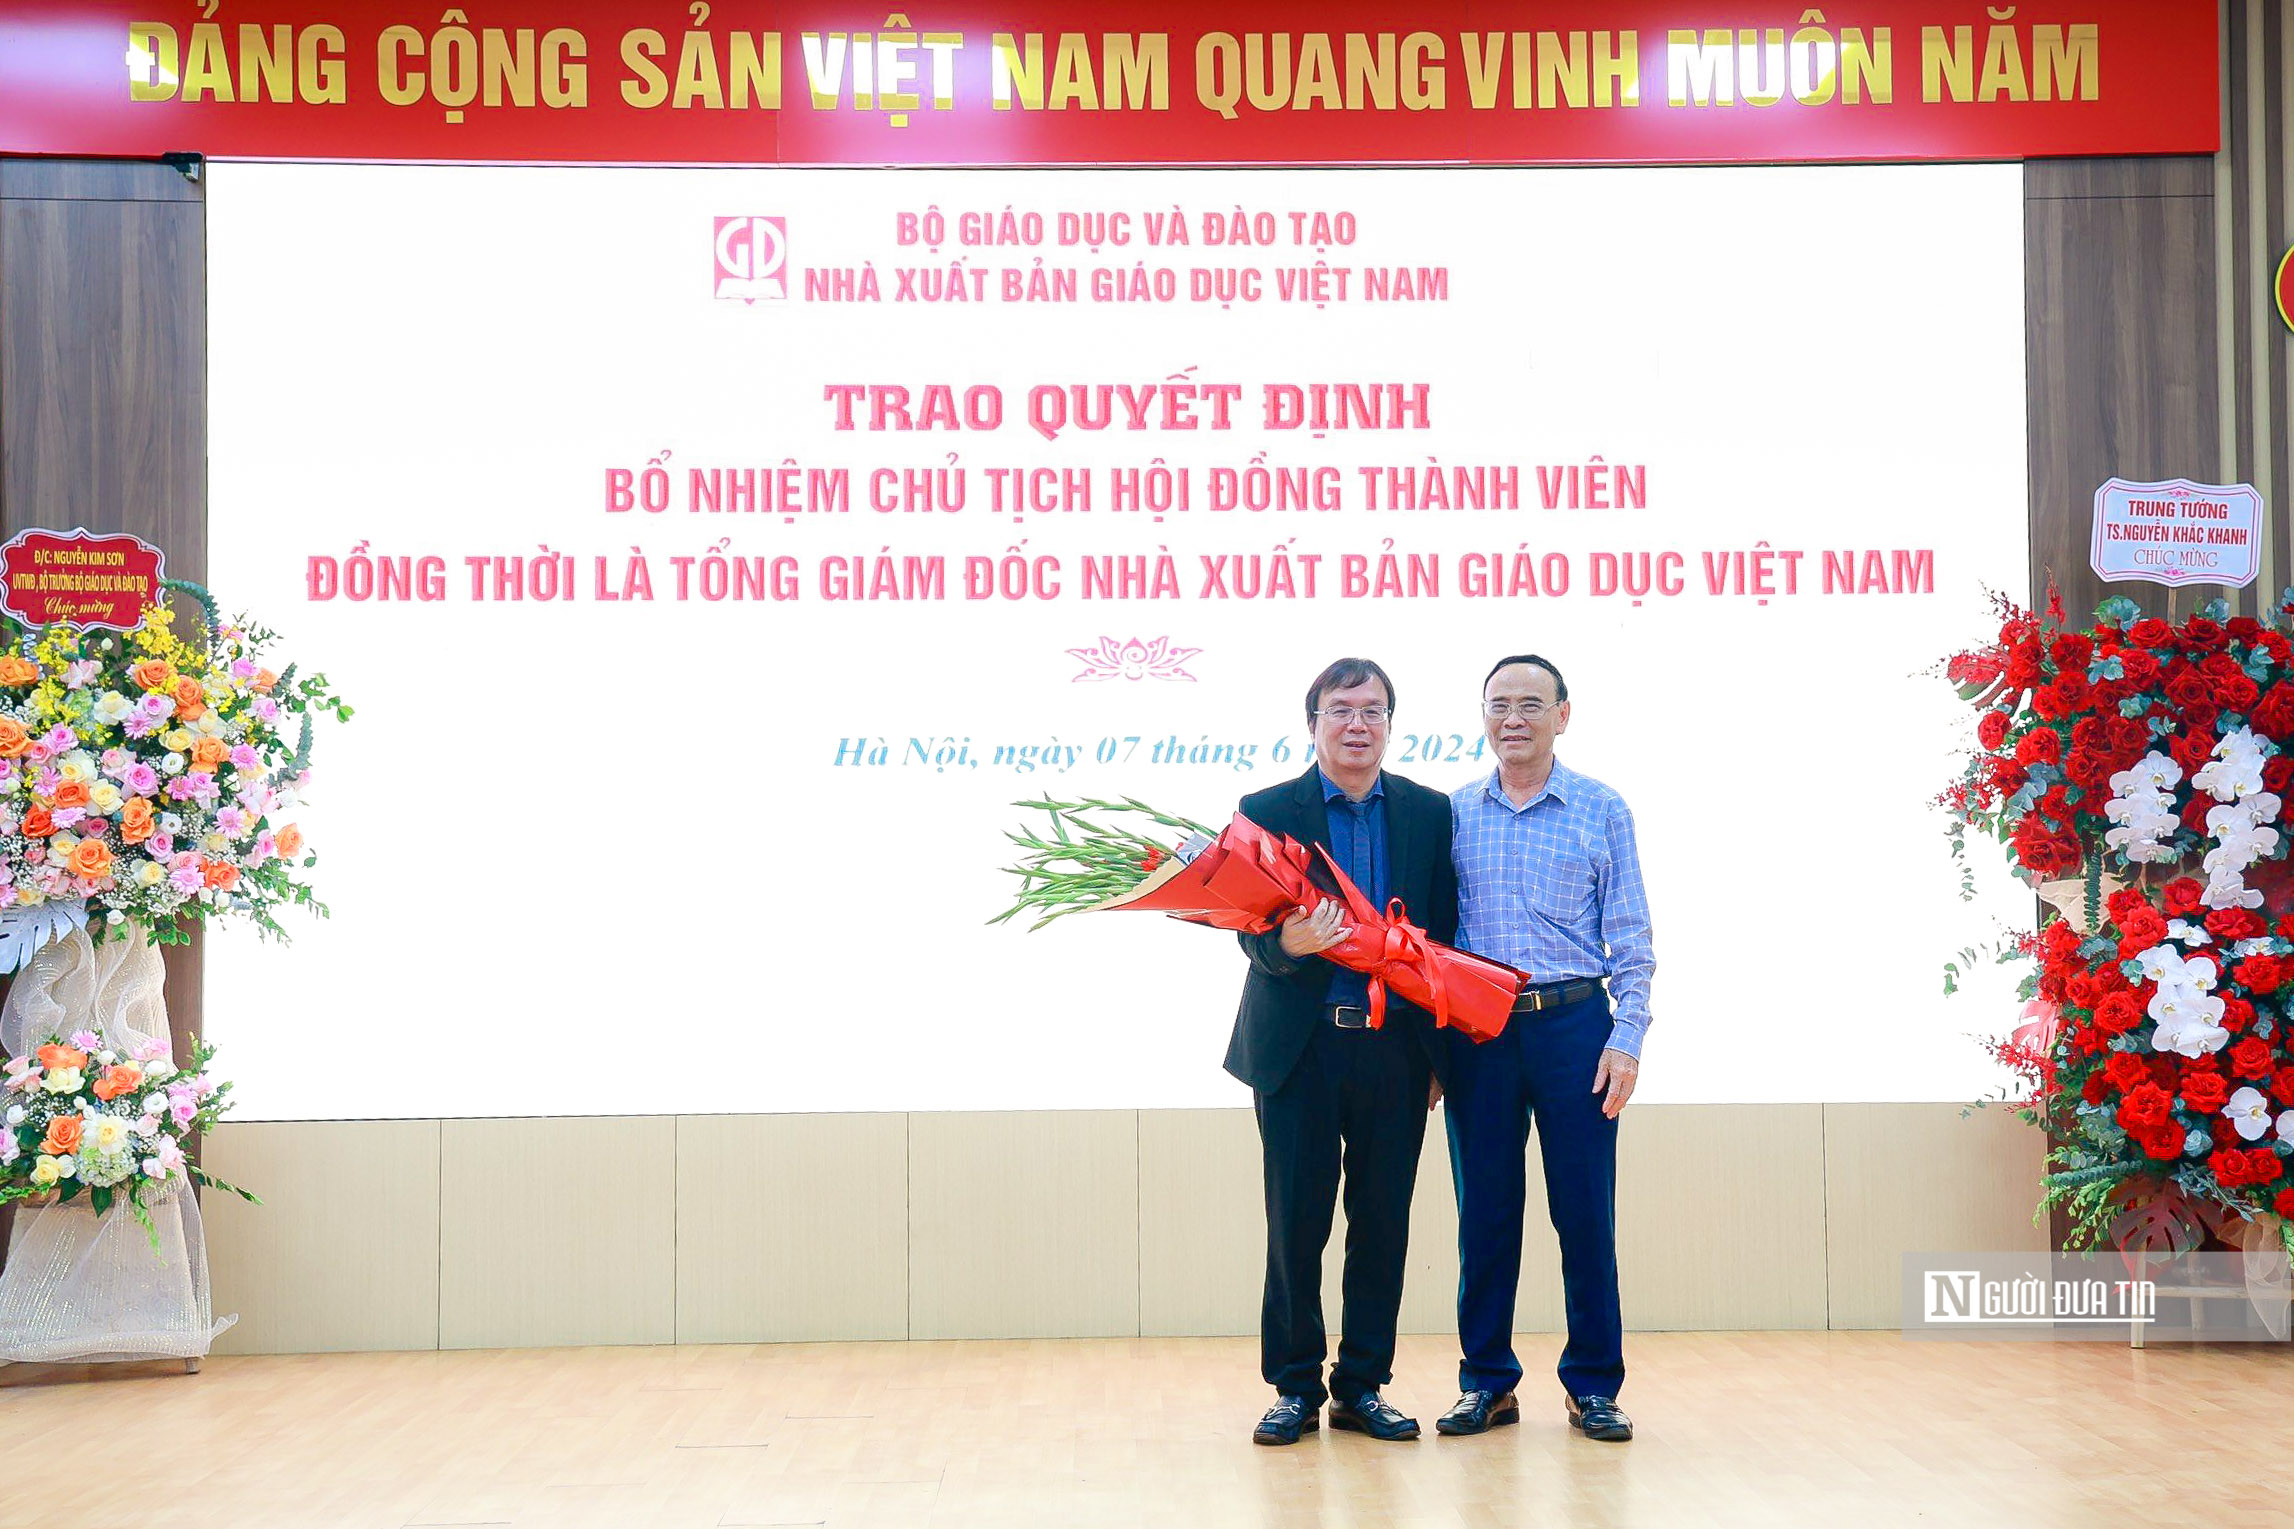 Tiêu điểm - Trao quyết định bổ nhiệm Chủ tịch HĐTV, TGĐ NXB Giáo dục Việt Nam (Hình 4).